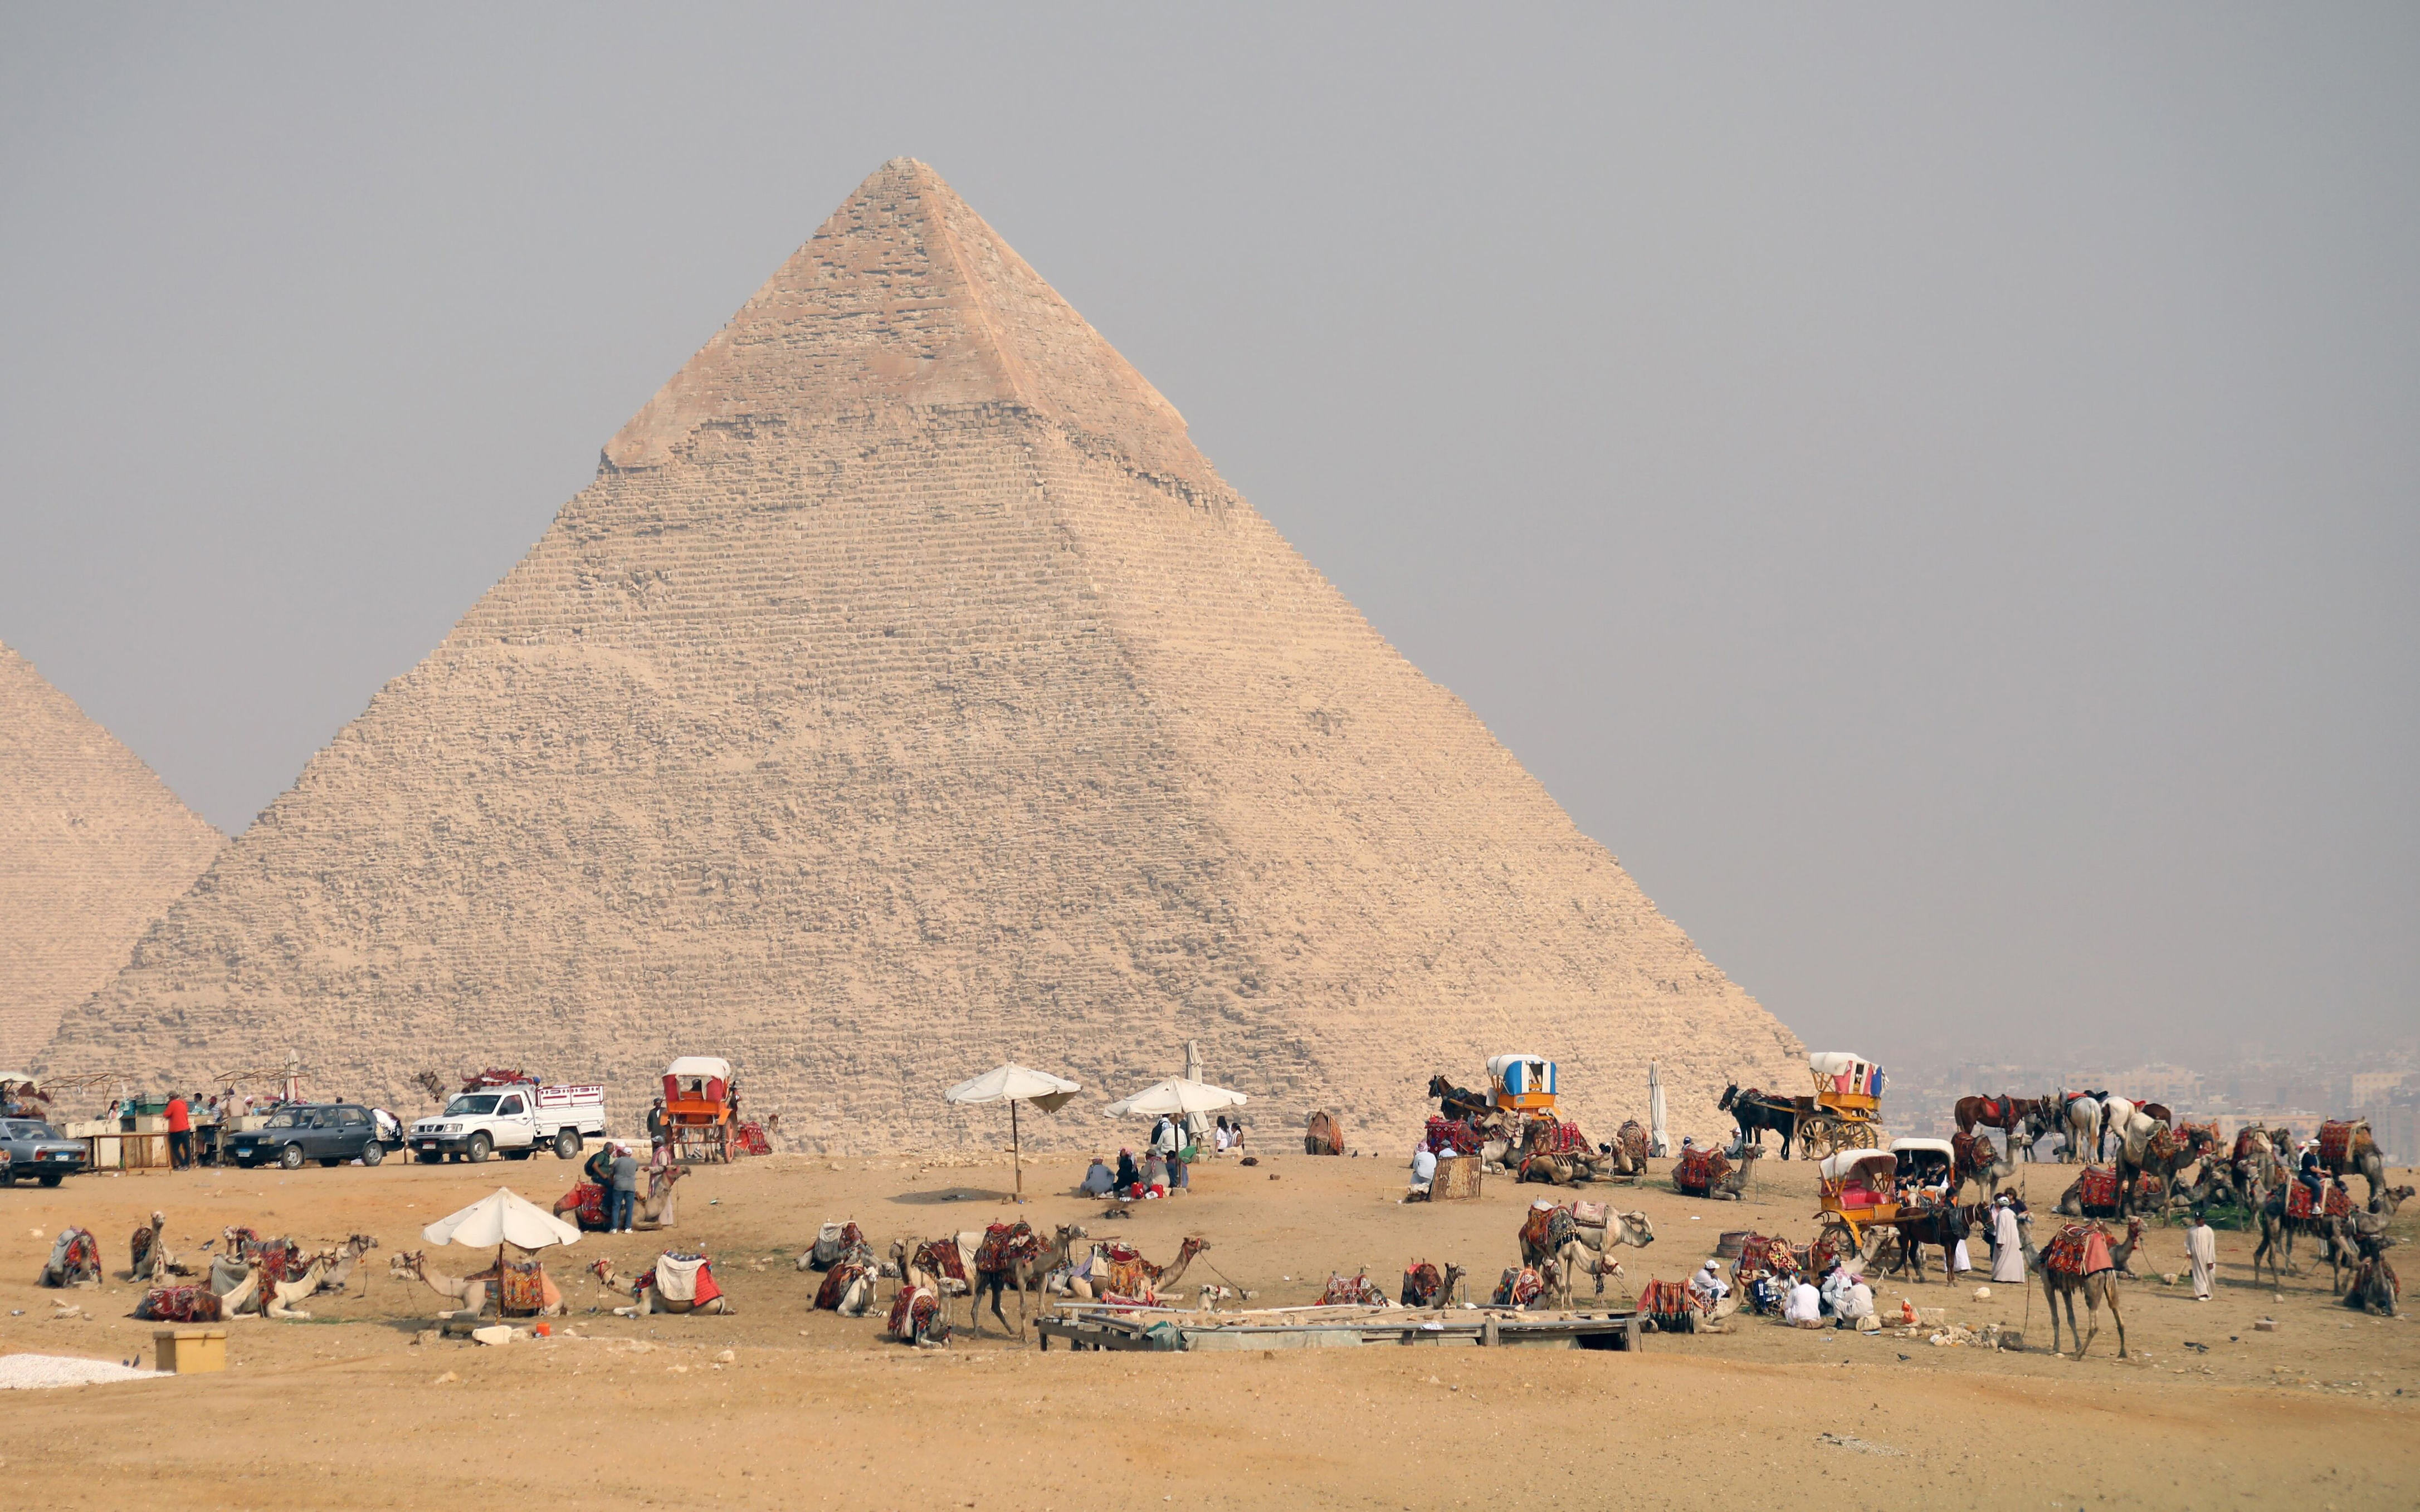 renovación de una pirámide causa polémica en egipto: expertos aseguran que será “un regalo al mundo”